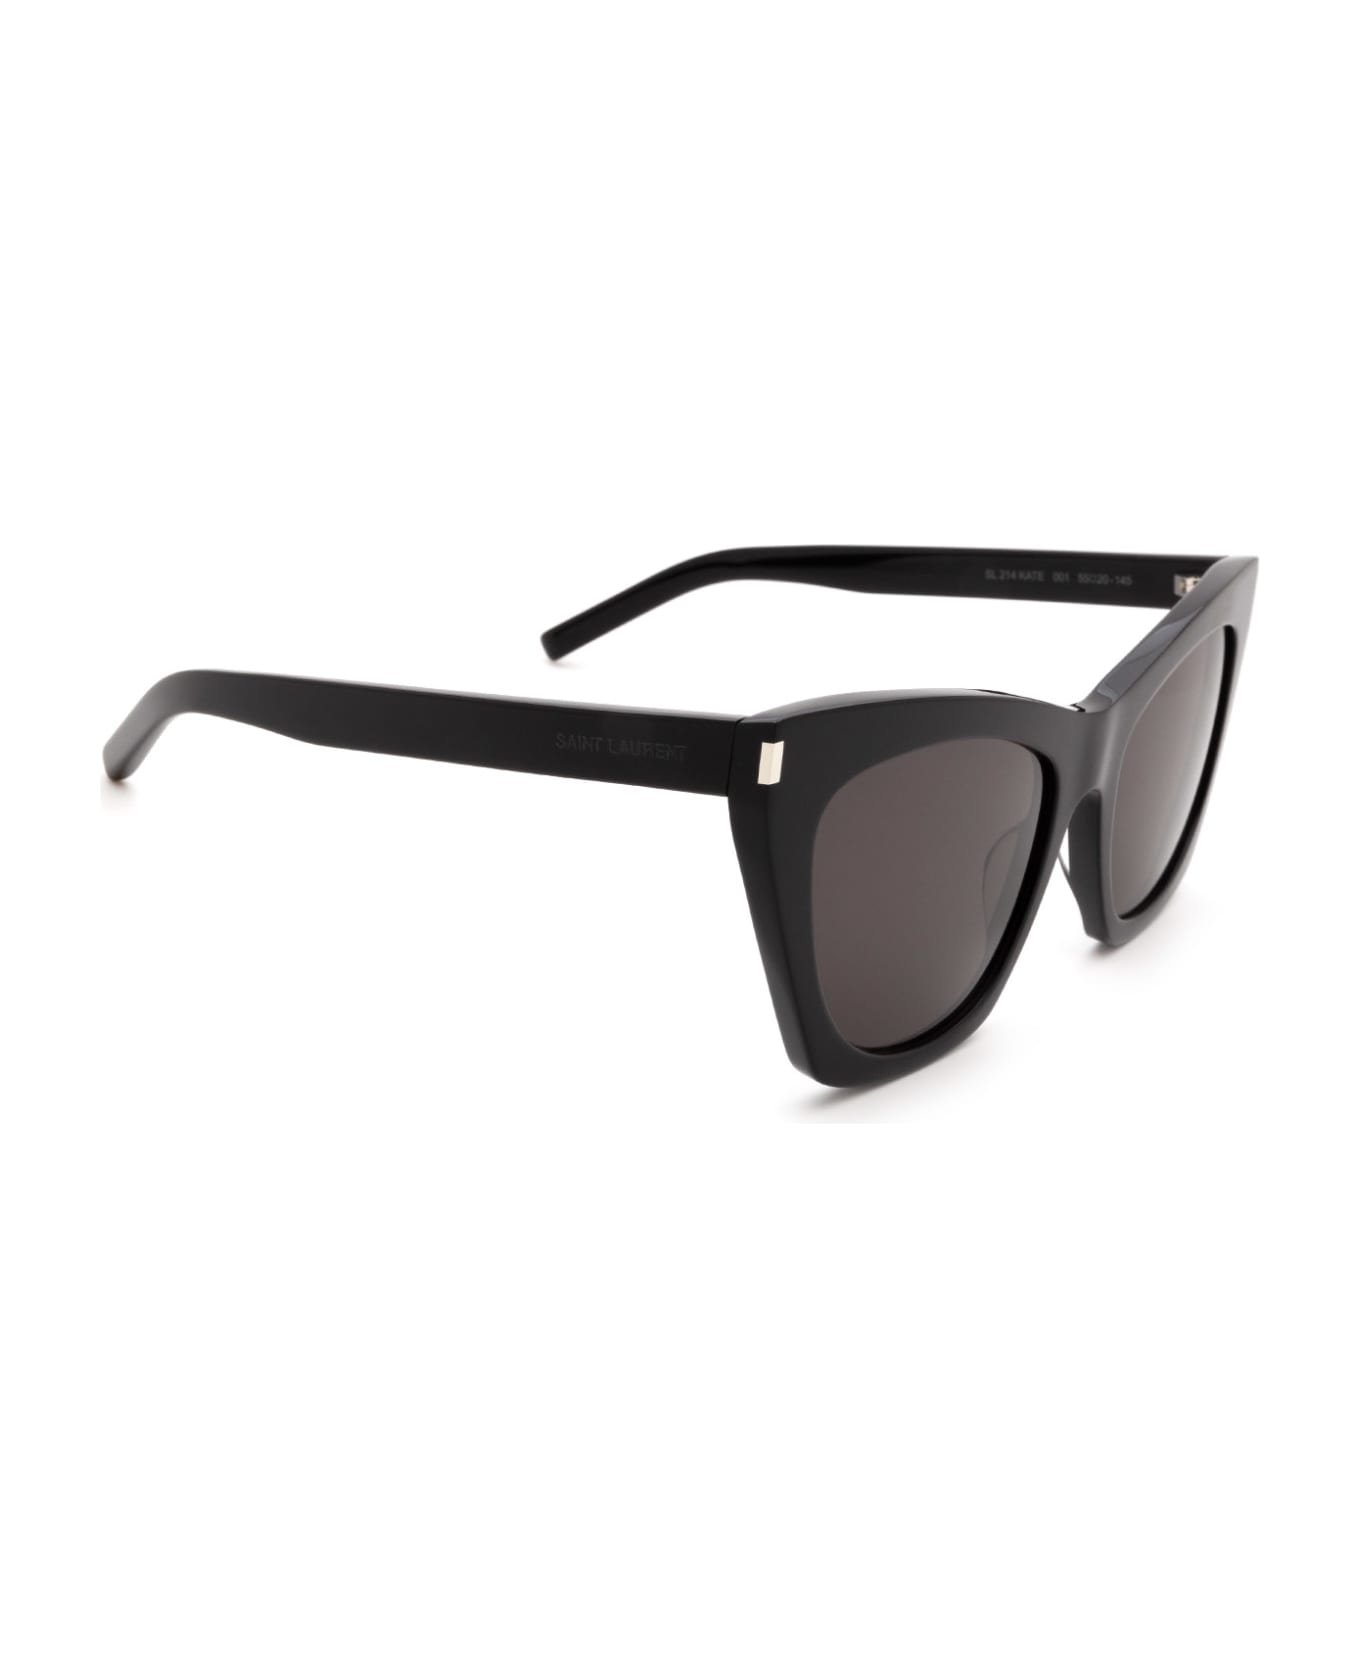 Saint Laurent Eyewear Sl 214 Black Sunglasses - Black